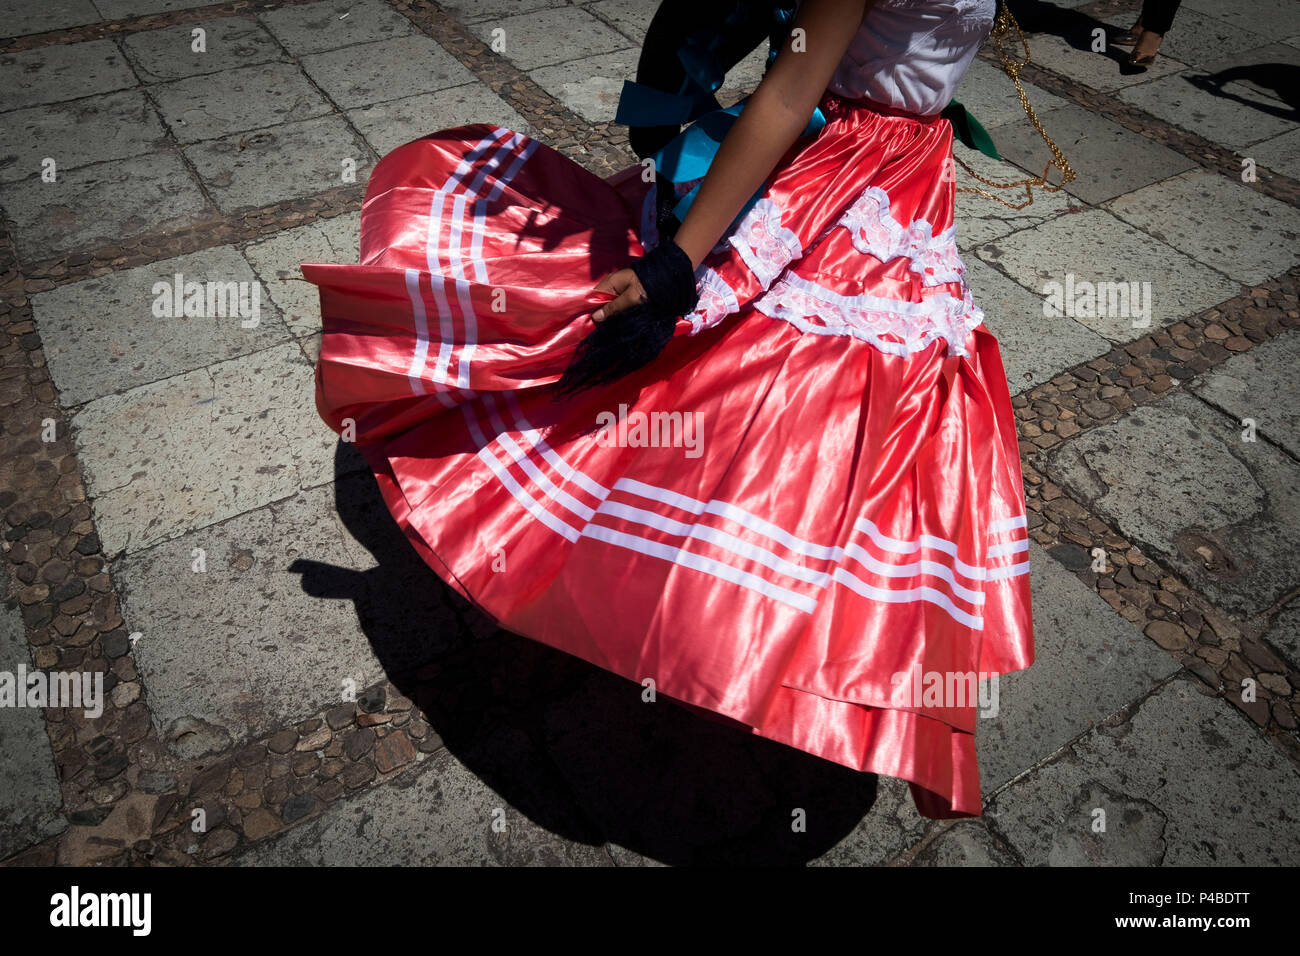 Dettaglio di un abito tradizionale durante una danza folcloristica nel centro della città di Oaxaca Foto Stock